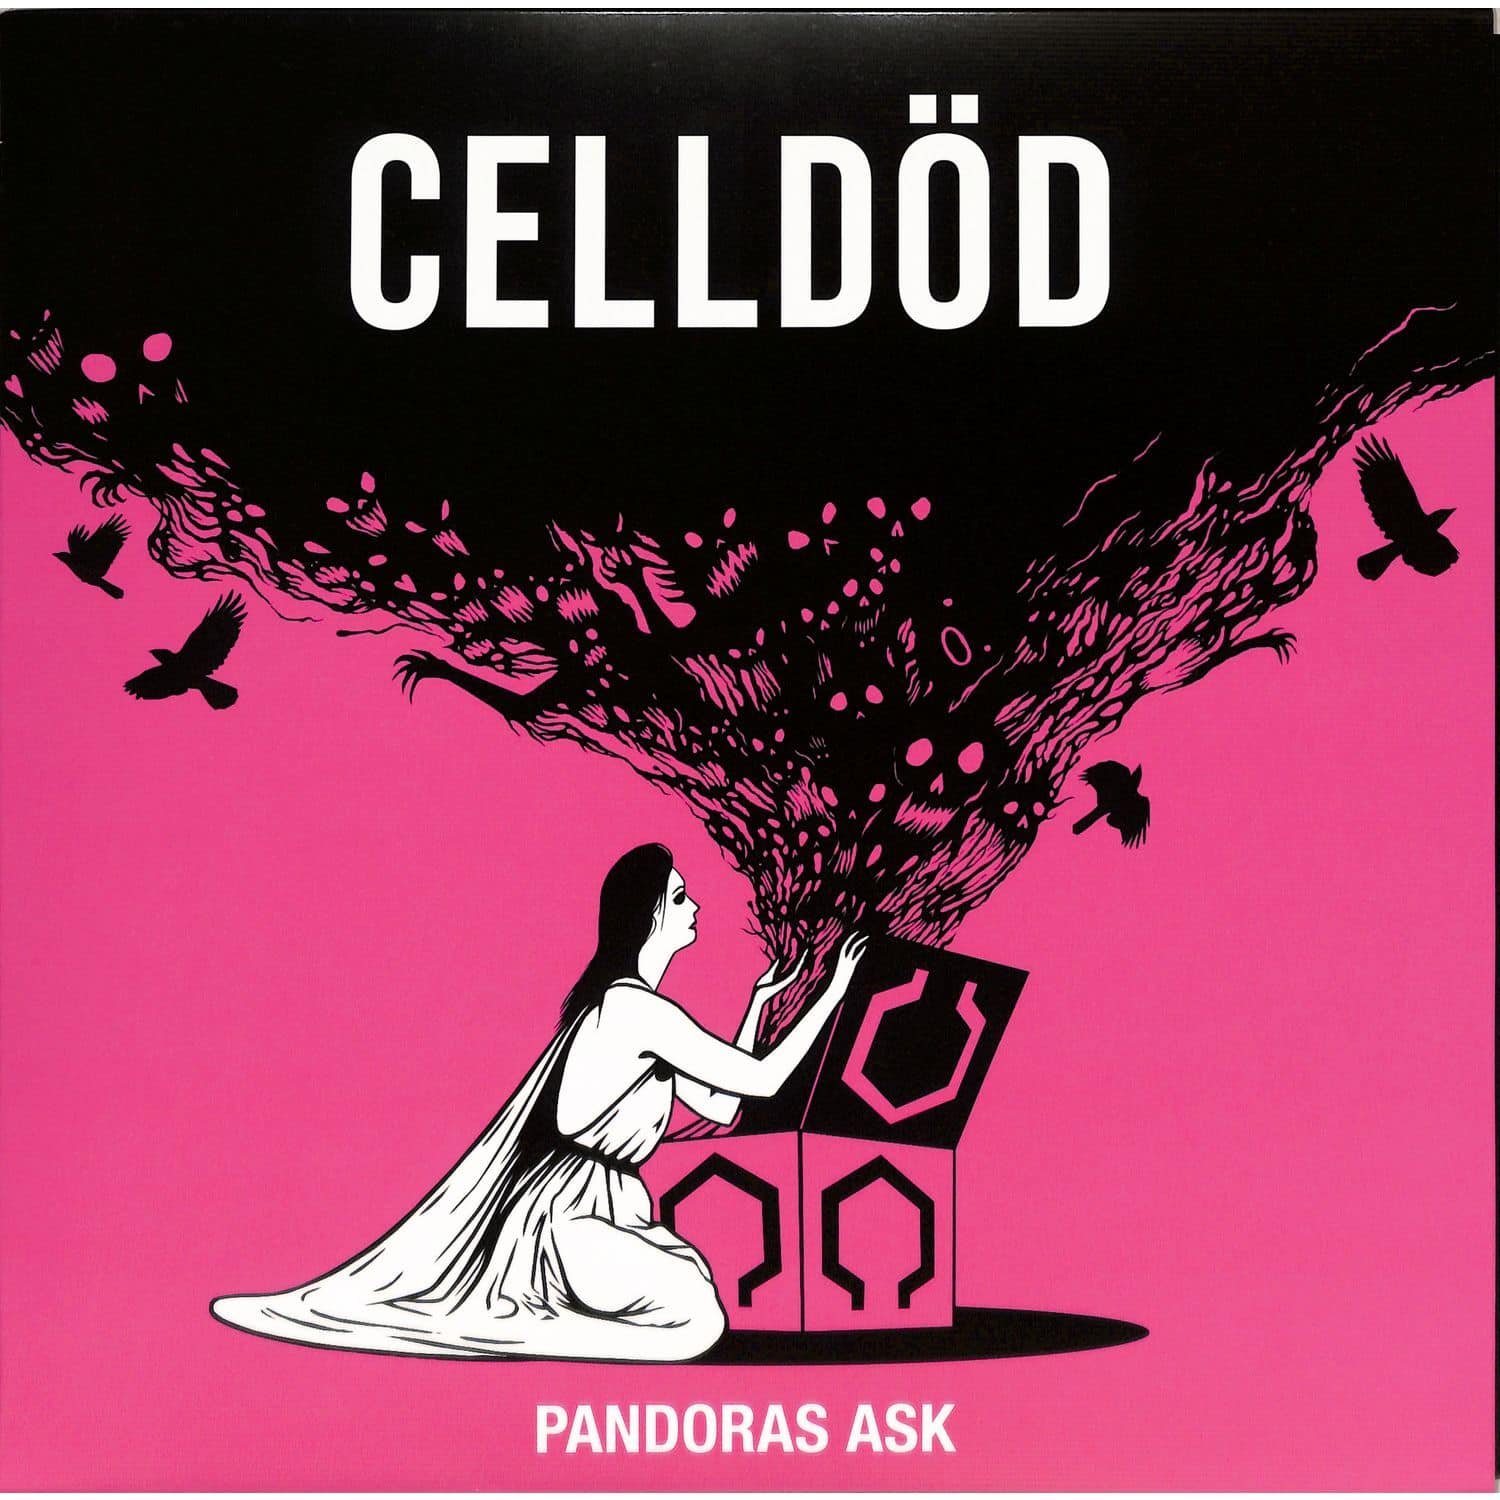 Celldod - PANDORAS ASK